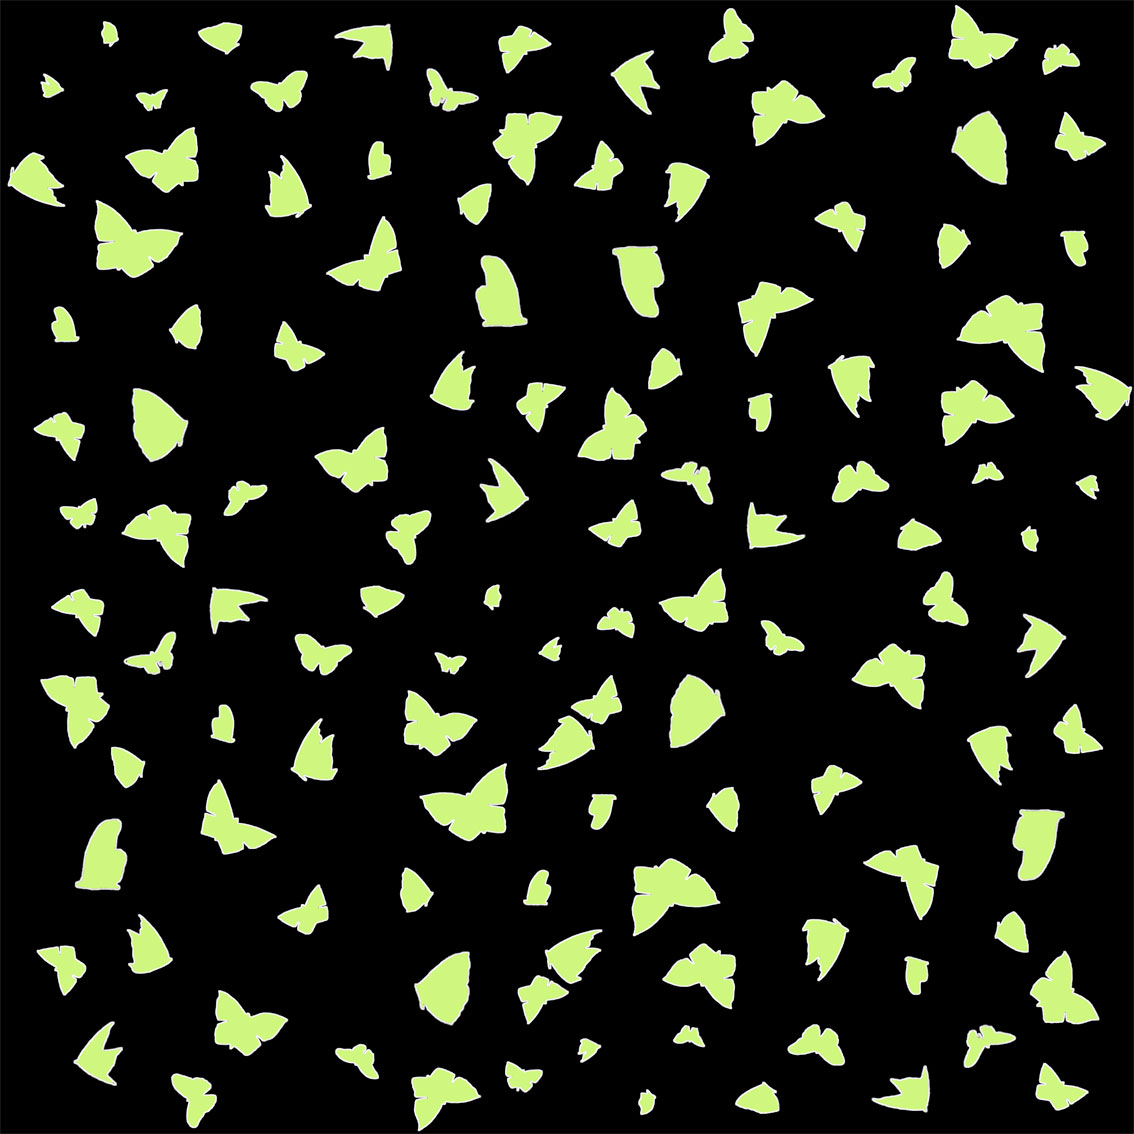 Green Almond Butterflies on Black Papillon-lépidoptère-sphynx-aurore-bombyx-paon-du-jour-monarque Thierry Bisch artiste peintre contemporain animaux tableau art décoration biodiversité conservation 